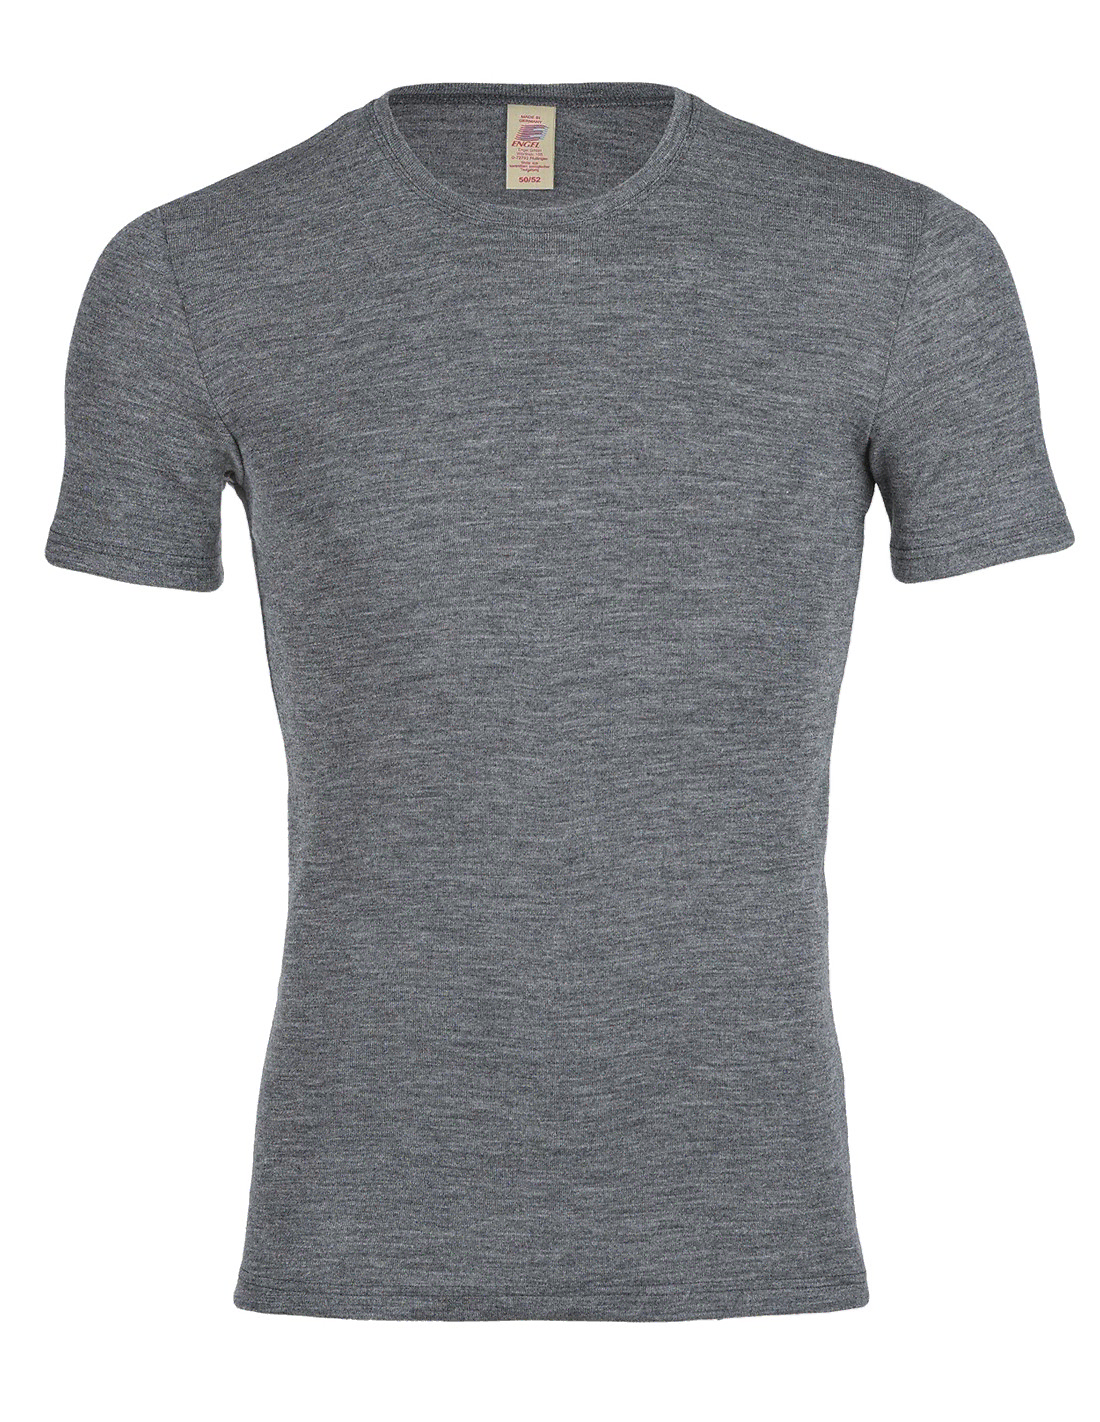 Heren T-Shirt Merino Wol Engel Natur, Kleur Antraciet, Maat 46/48 - Medium Top Merken Winkel